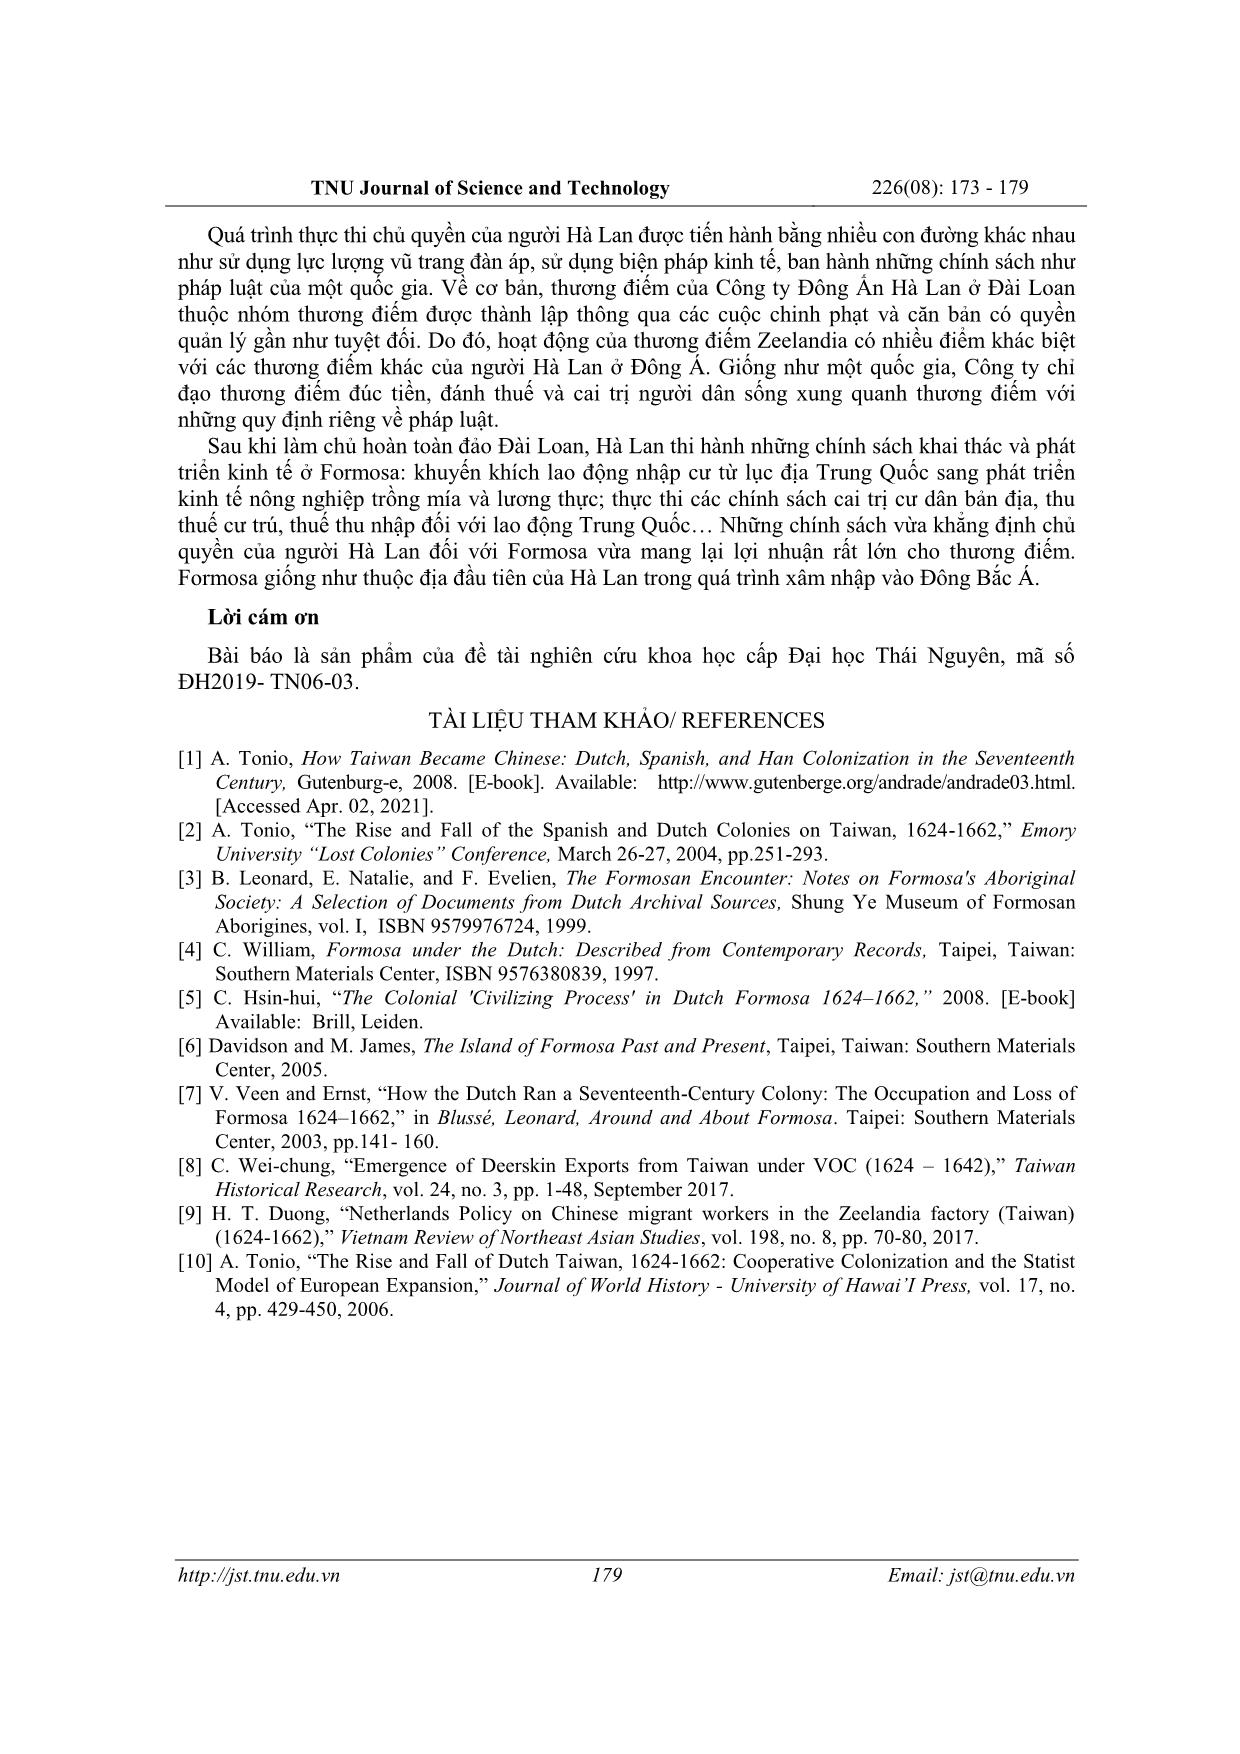 Quá trình xác lập chủ quyền của Công ty Đông Ấn Hà Lan (VOC) ở Đài Loan (1624-1662) trang 7